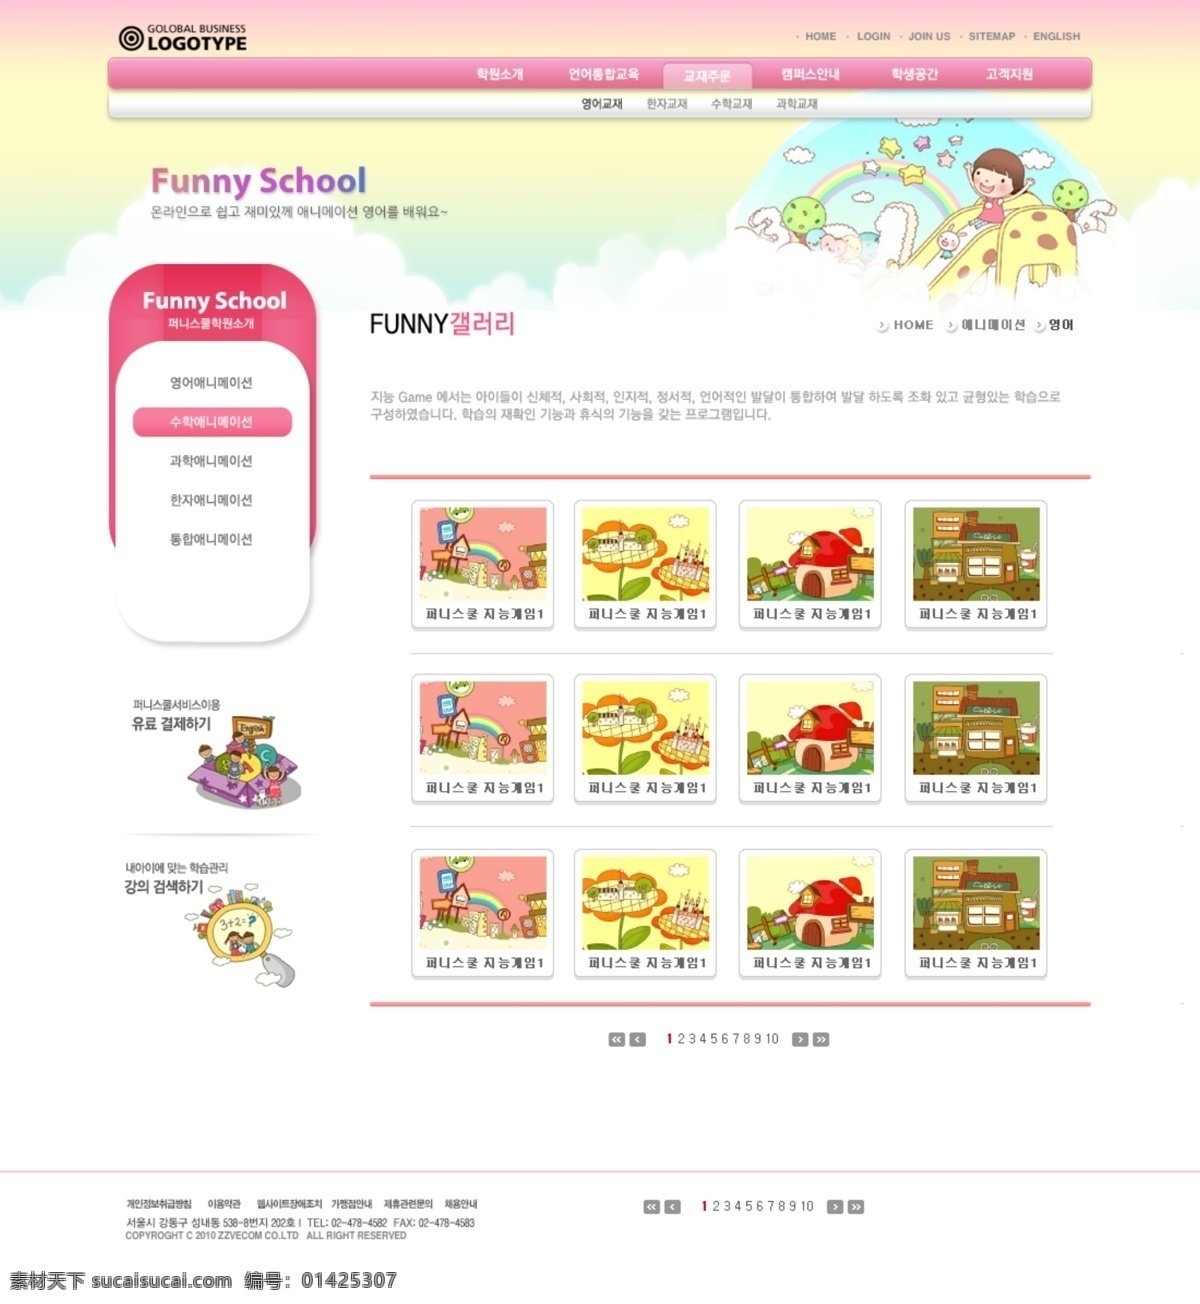 韩国 韩国模板 网页模板 源文件 教育培训 类 儿童 学校教育 培训机构 网页素材